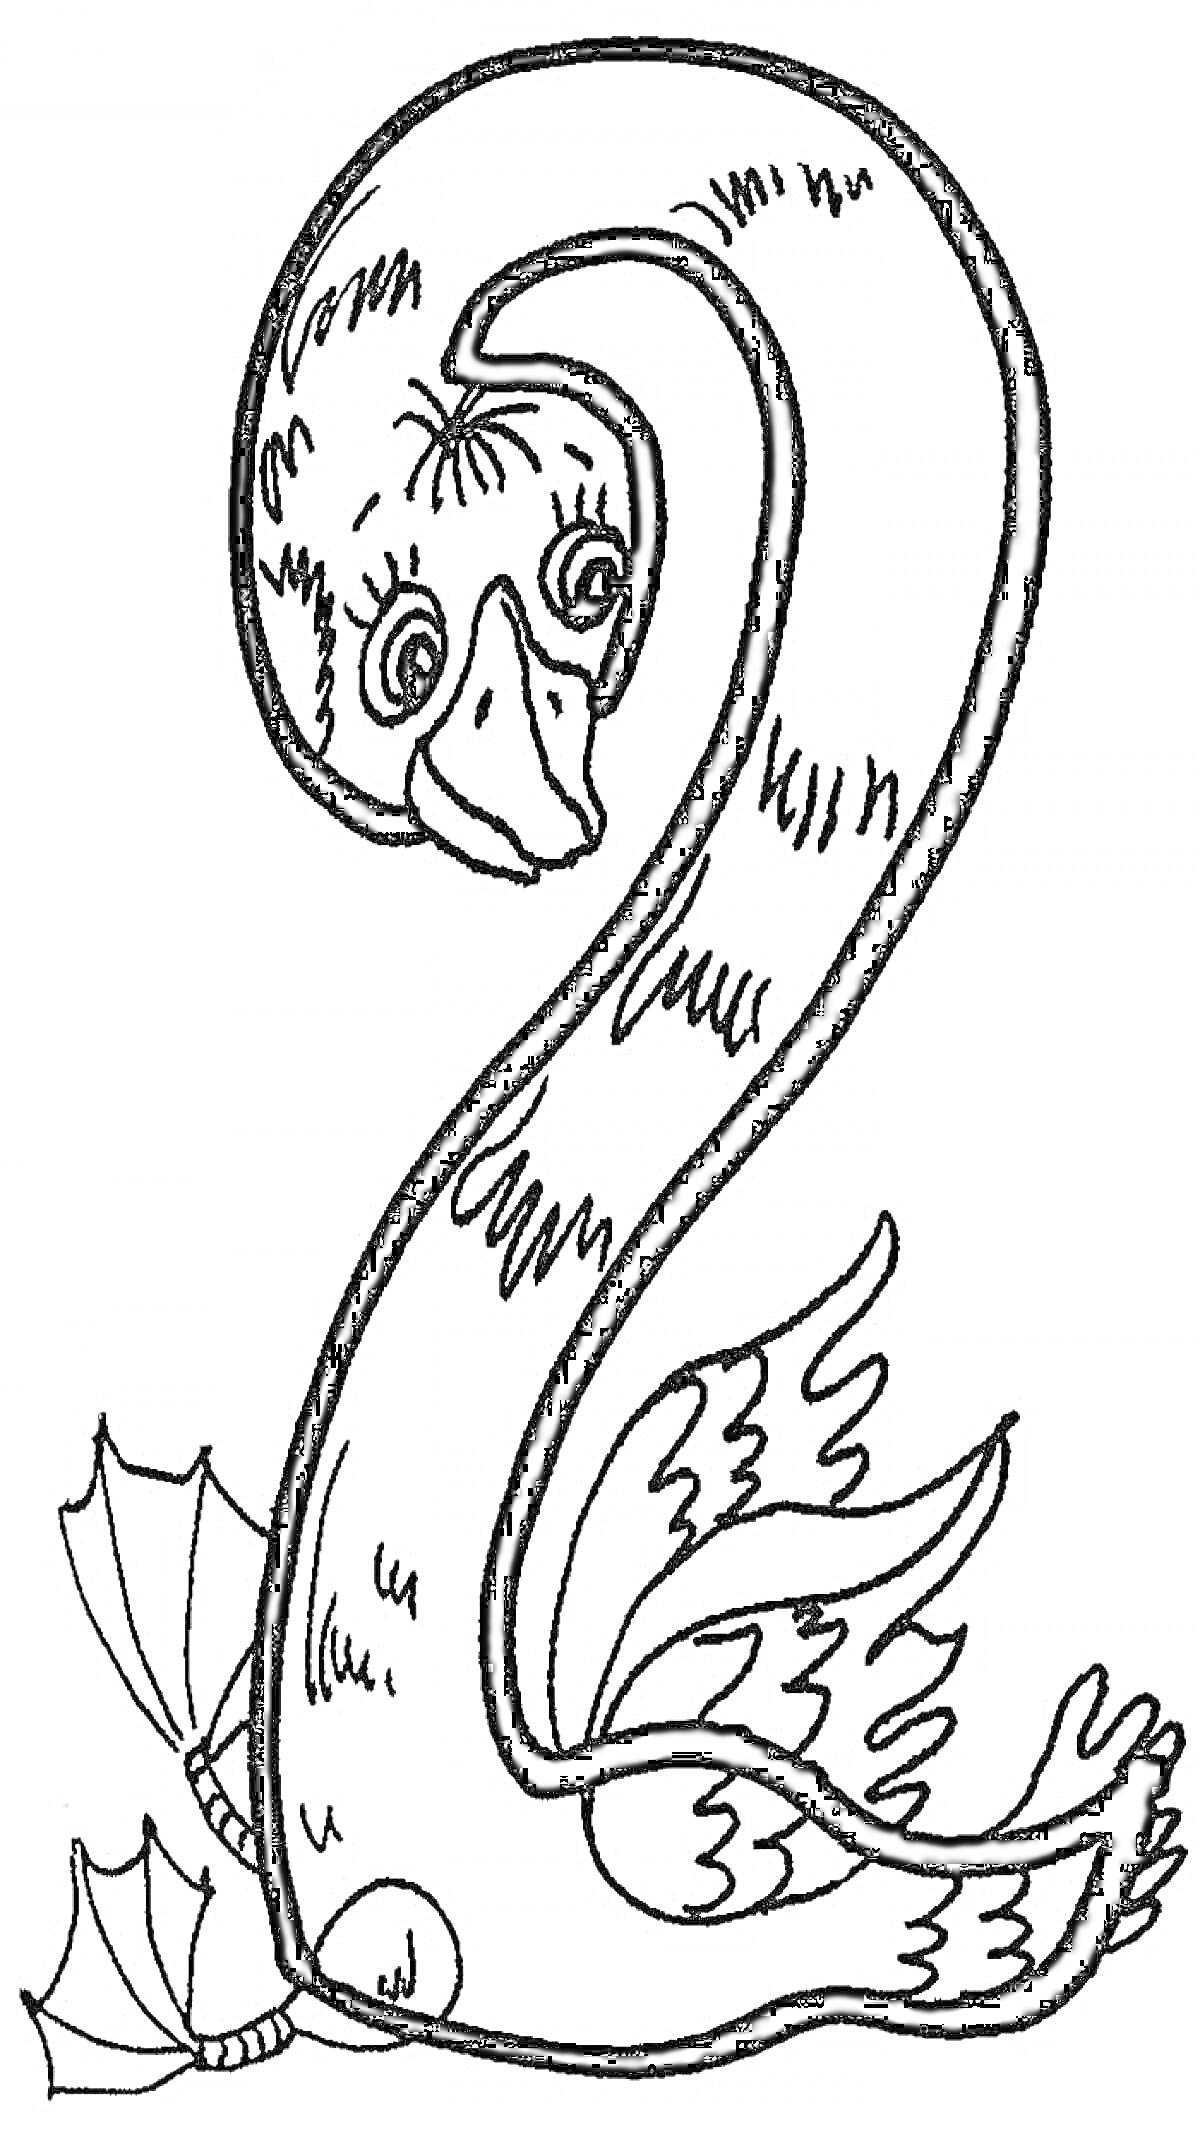 Цифра 2 в виде лебедя с крыльями и лапами